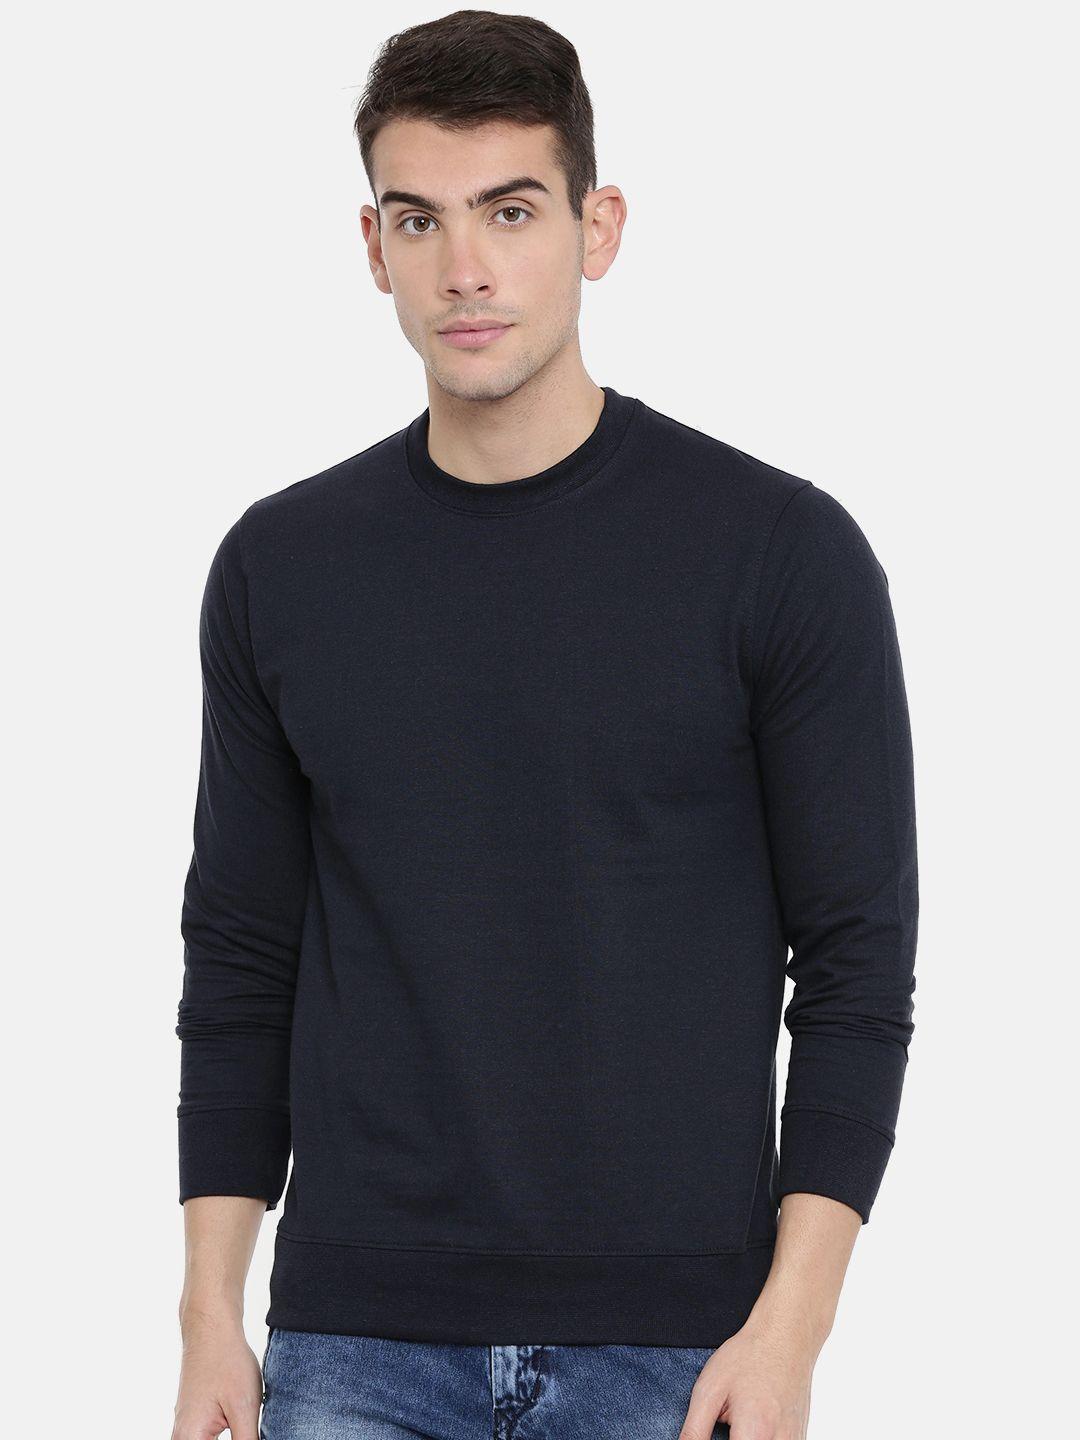 arise-men-navy-blue-solid-sweatshirt